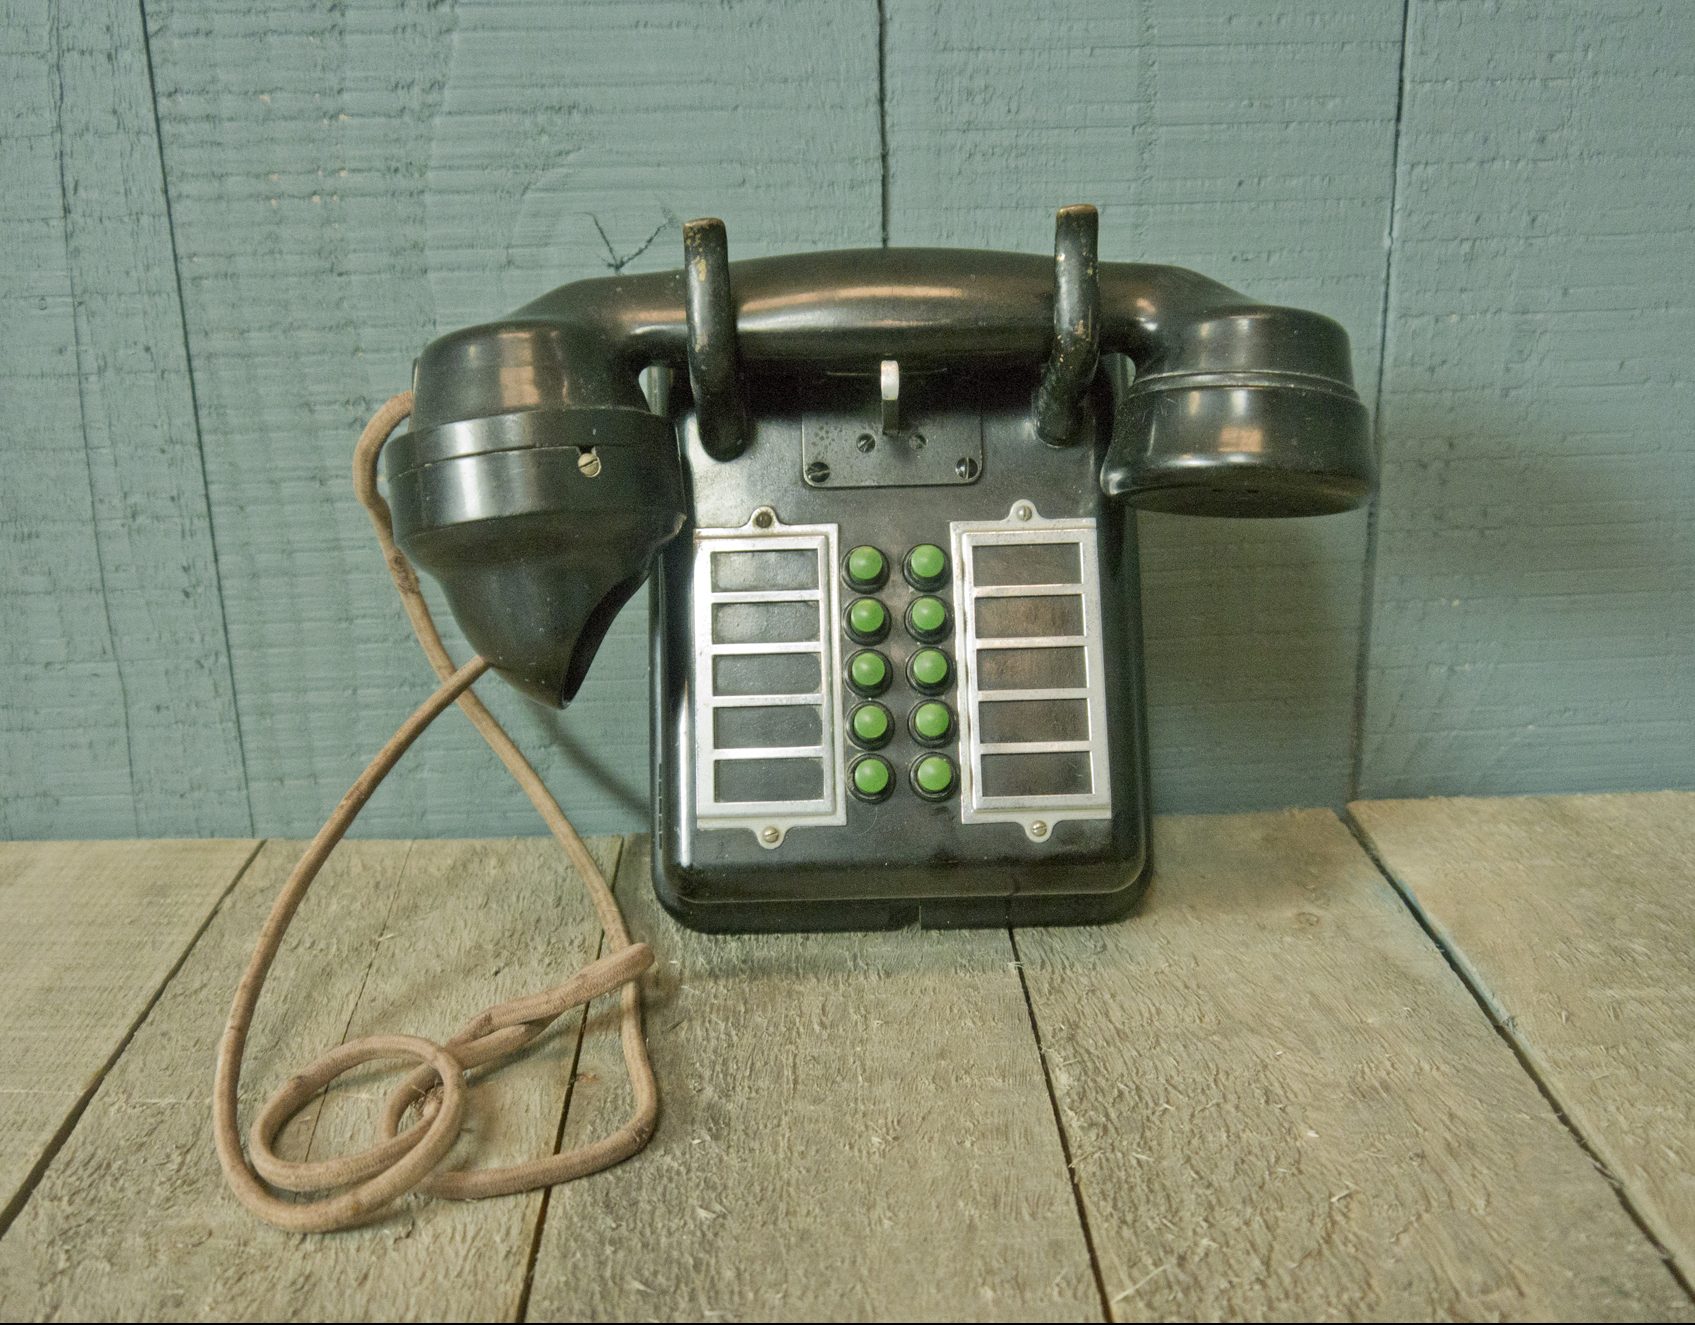 Internal Wall Telephone – 10 Green Buttons